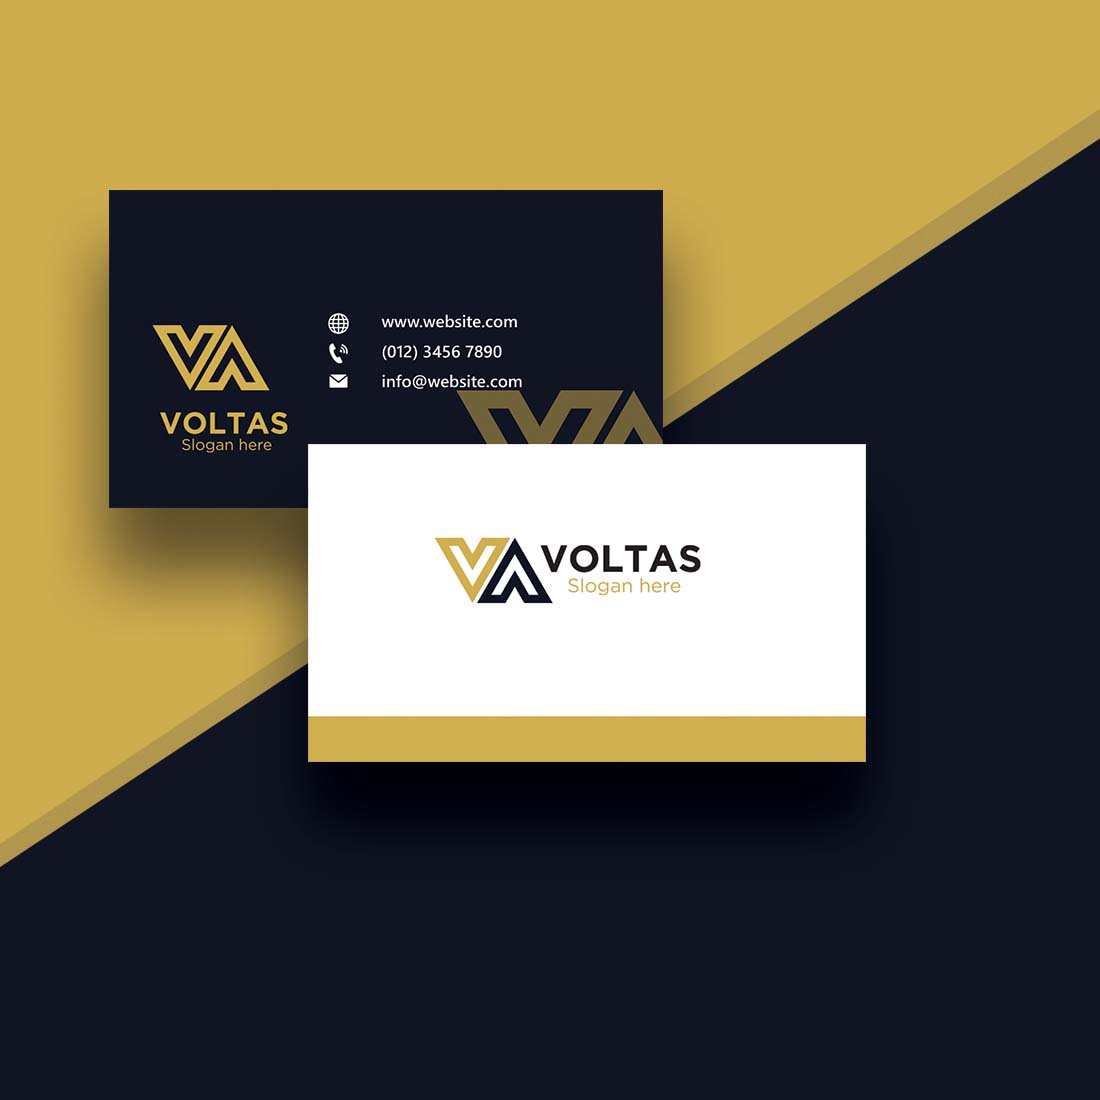 Voltus GmbH Reviews | Read Customer Service Reviews of www.voltus.de